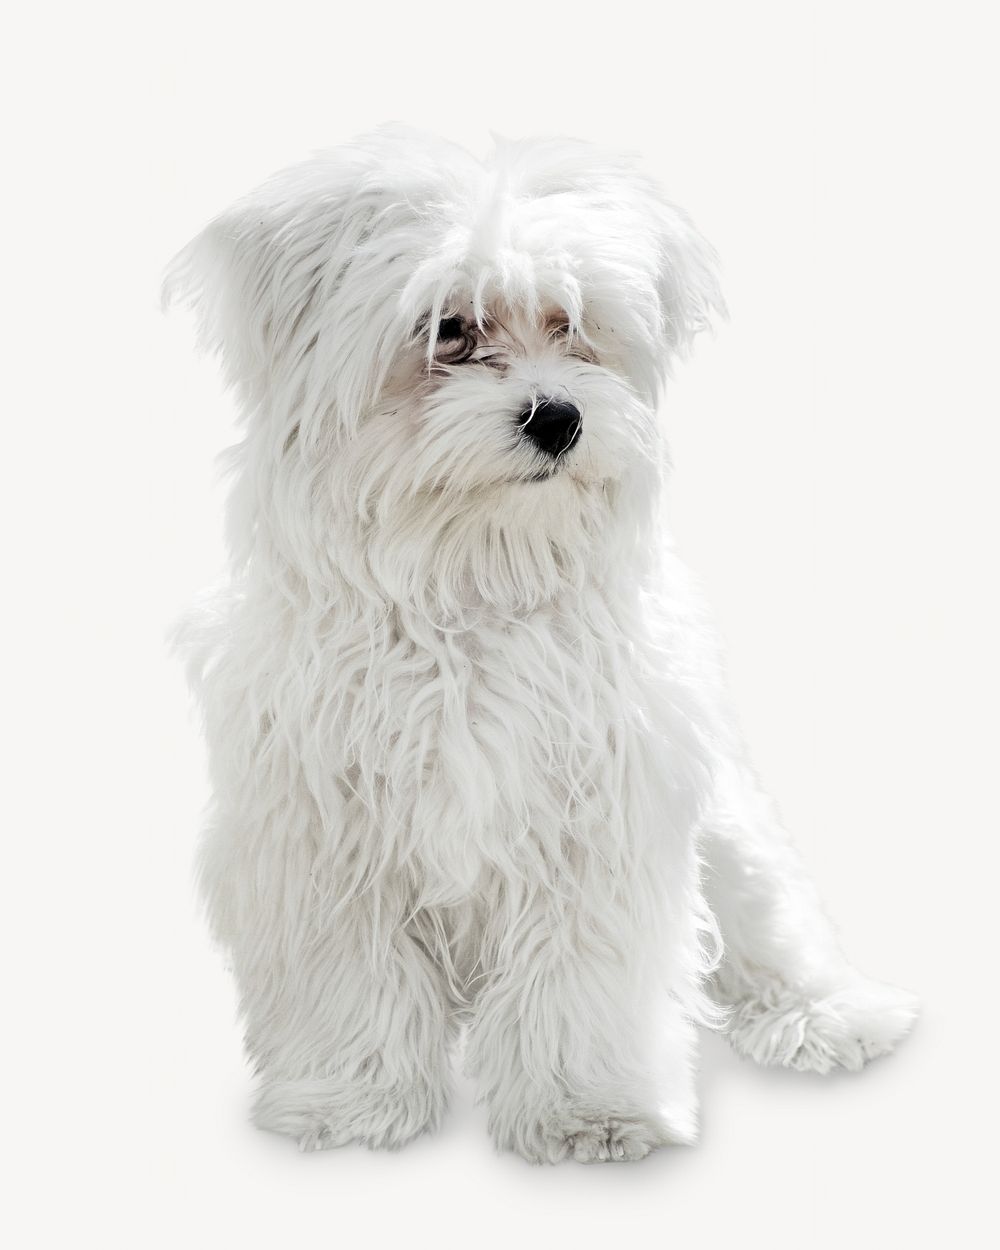 Maltese dog, pet animal image